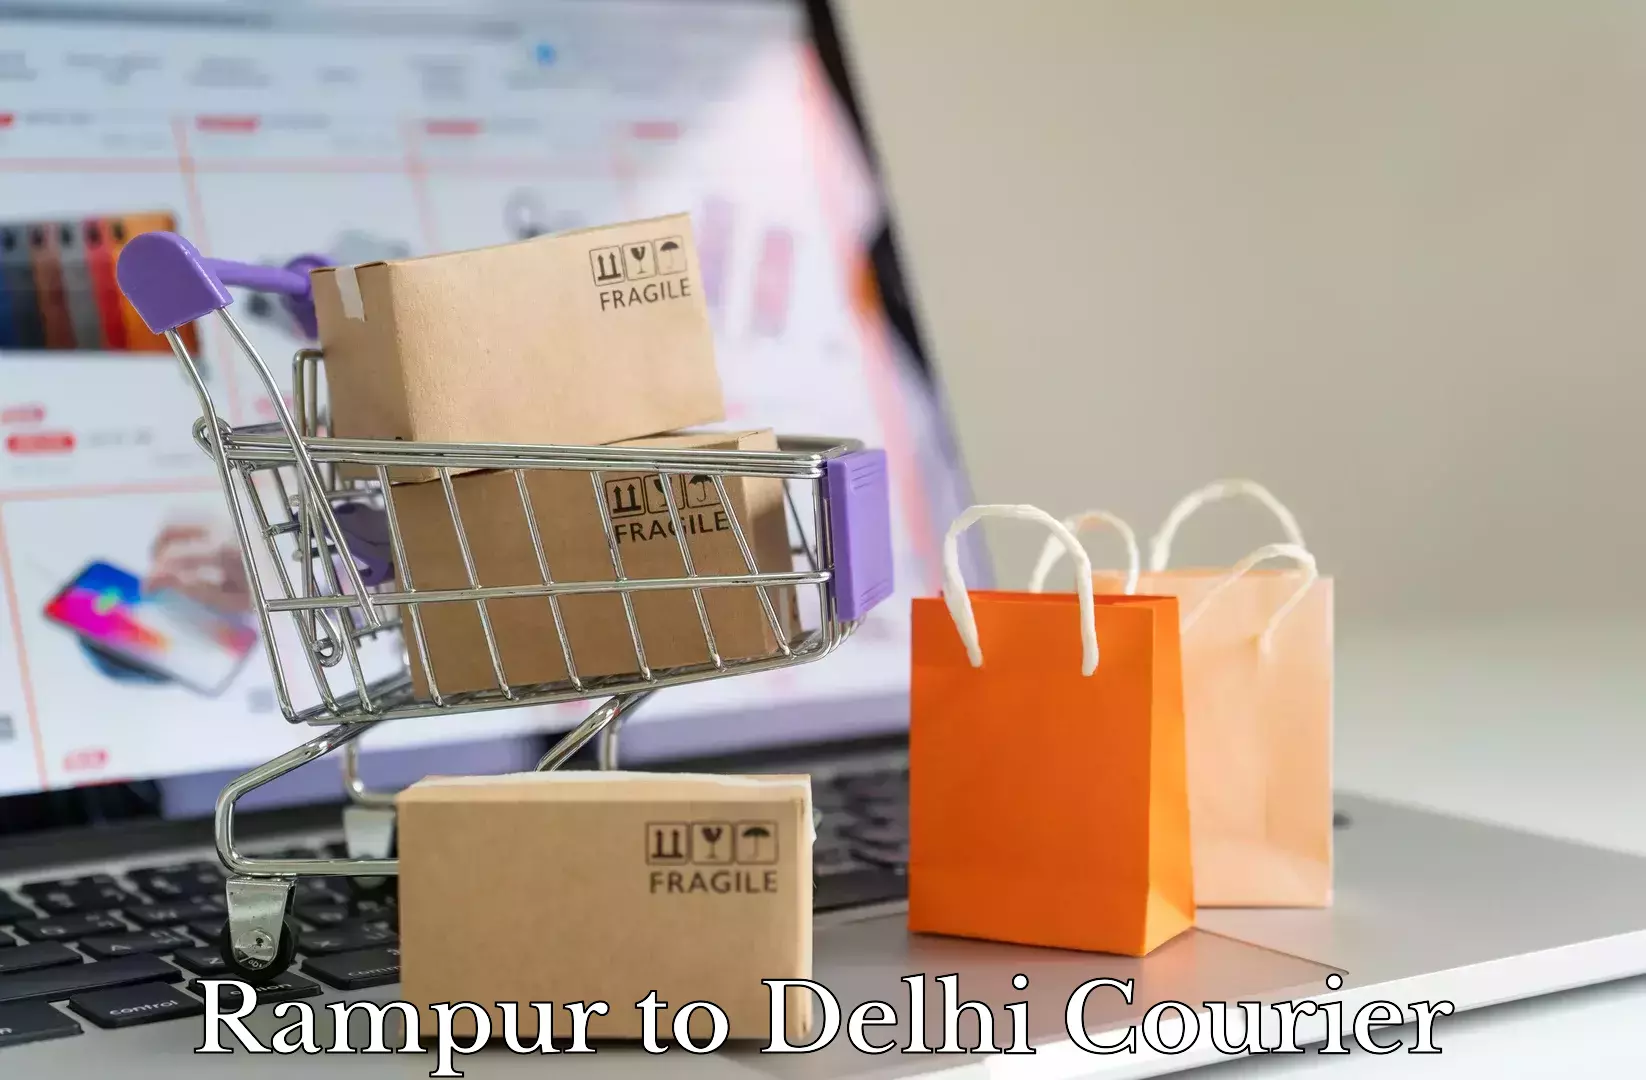 Professional relocation services Rampur to Jamia Millia Islamia New Delhi